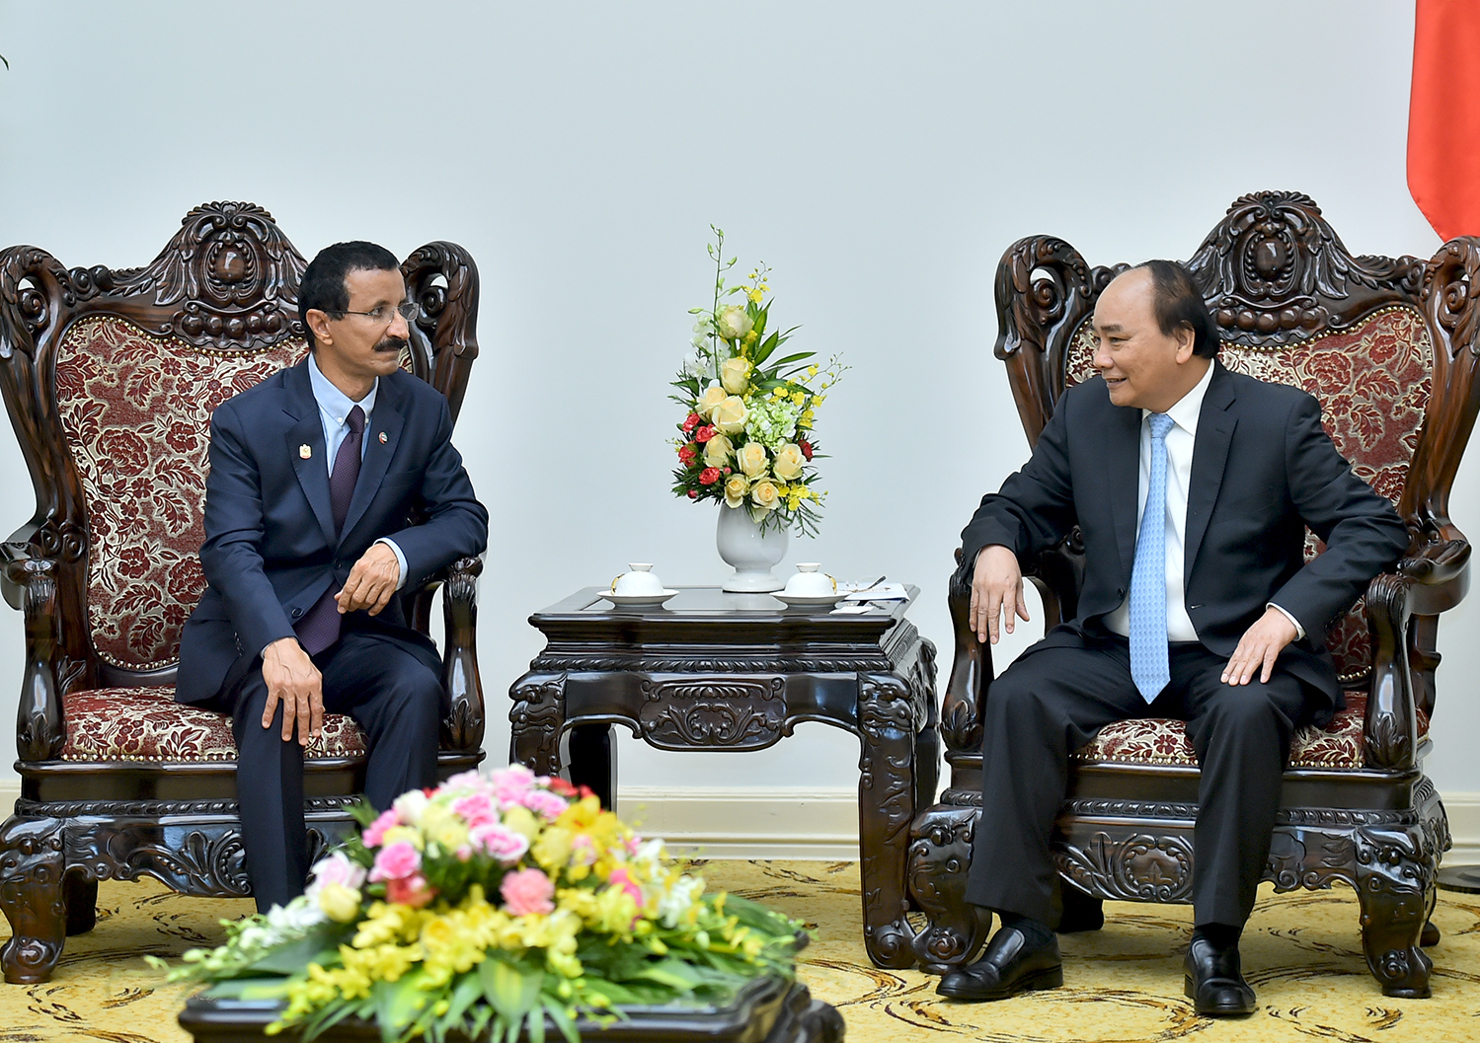 Thủ tướng Chính phủ Nguyễn Xuân Phúc tại buổi tiếp ông Sultan Ahmad Bin Sulayem - Chủ tịch, Tổng Giám đốc Tập đoàn DP World. Nguồn: chinhphu.vn